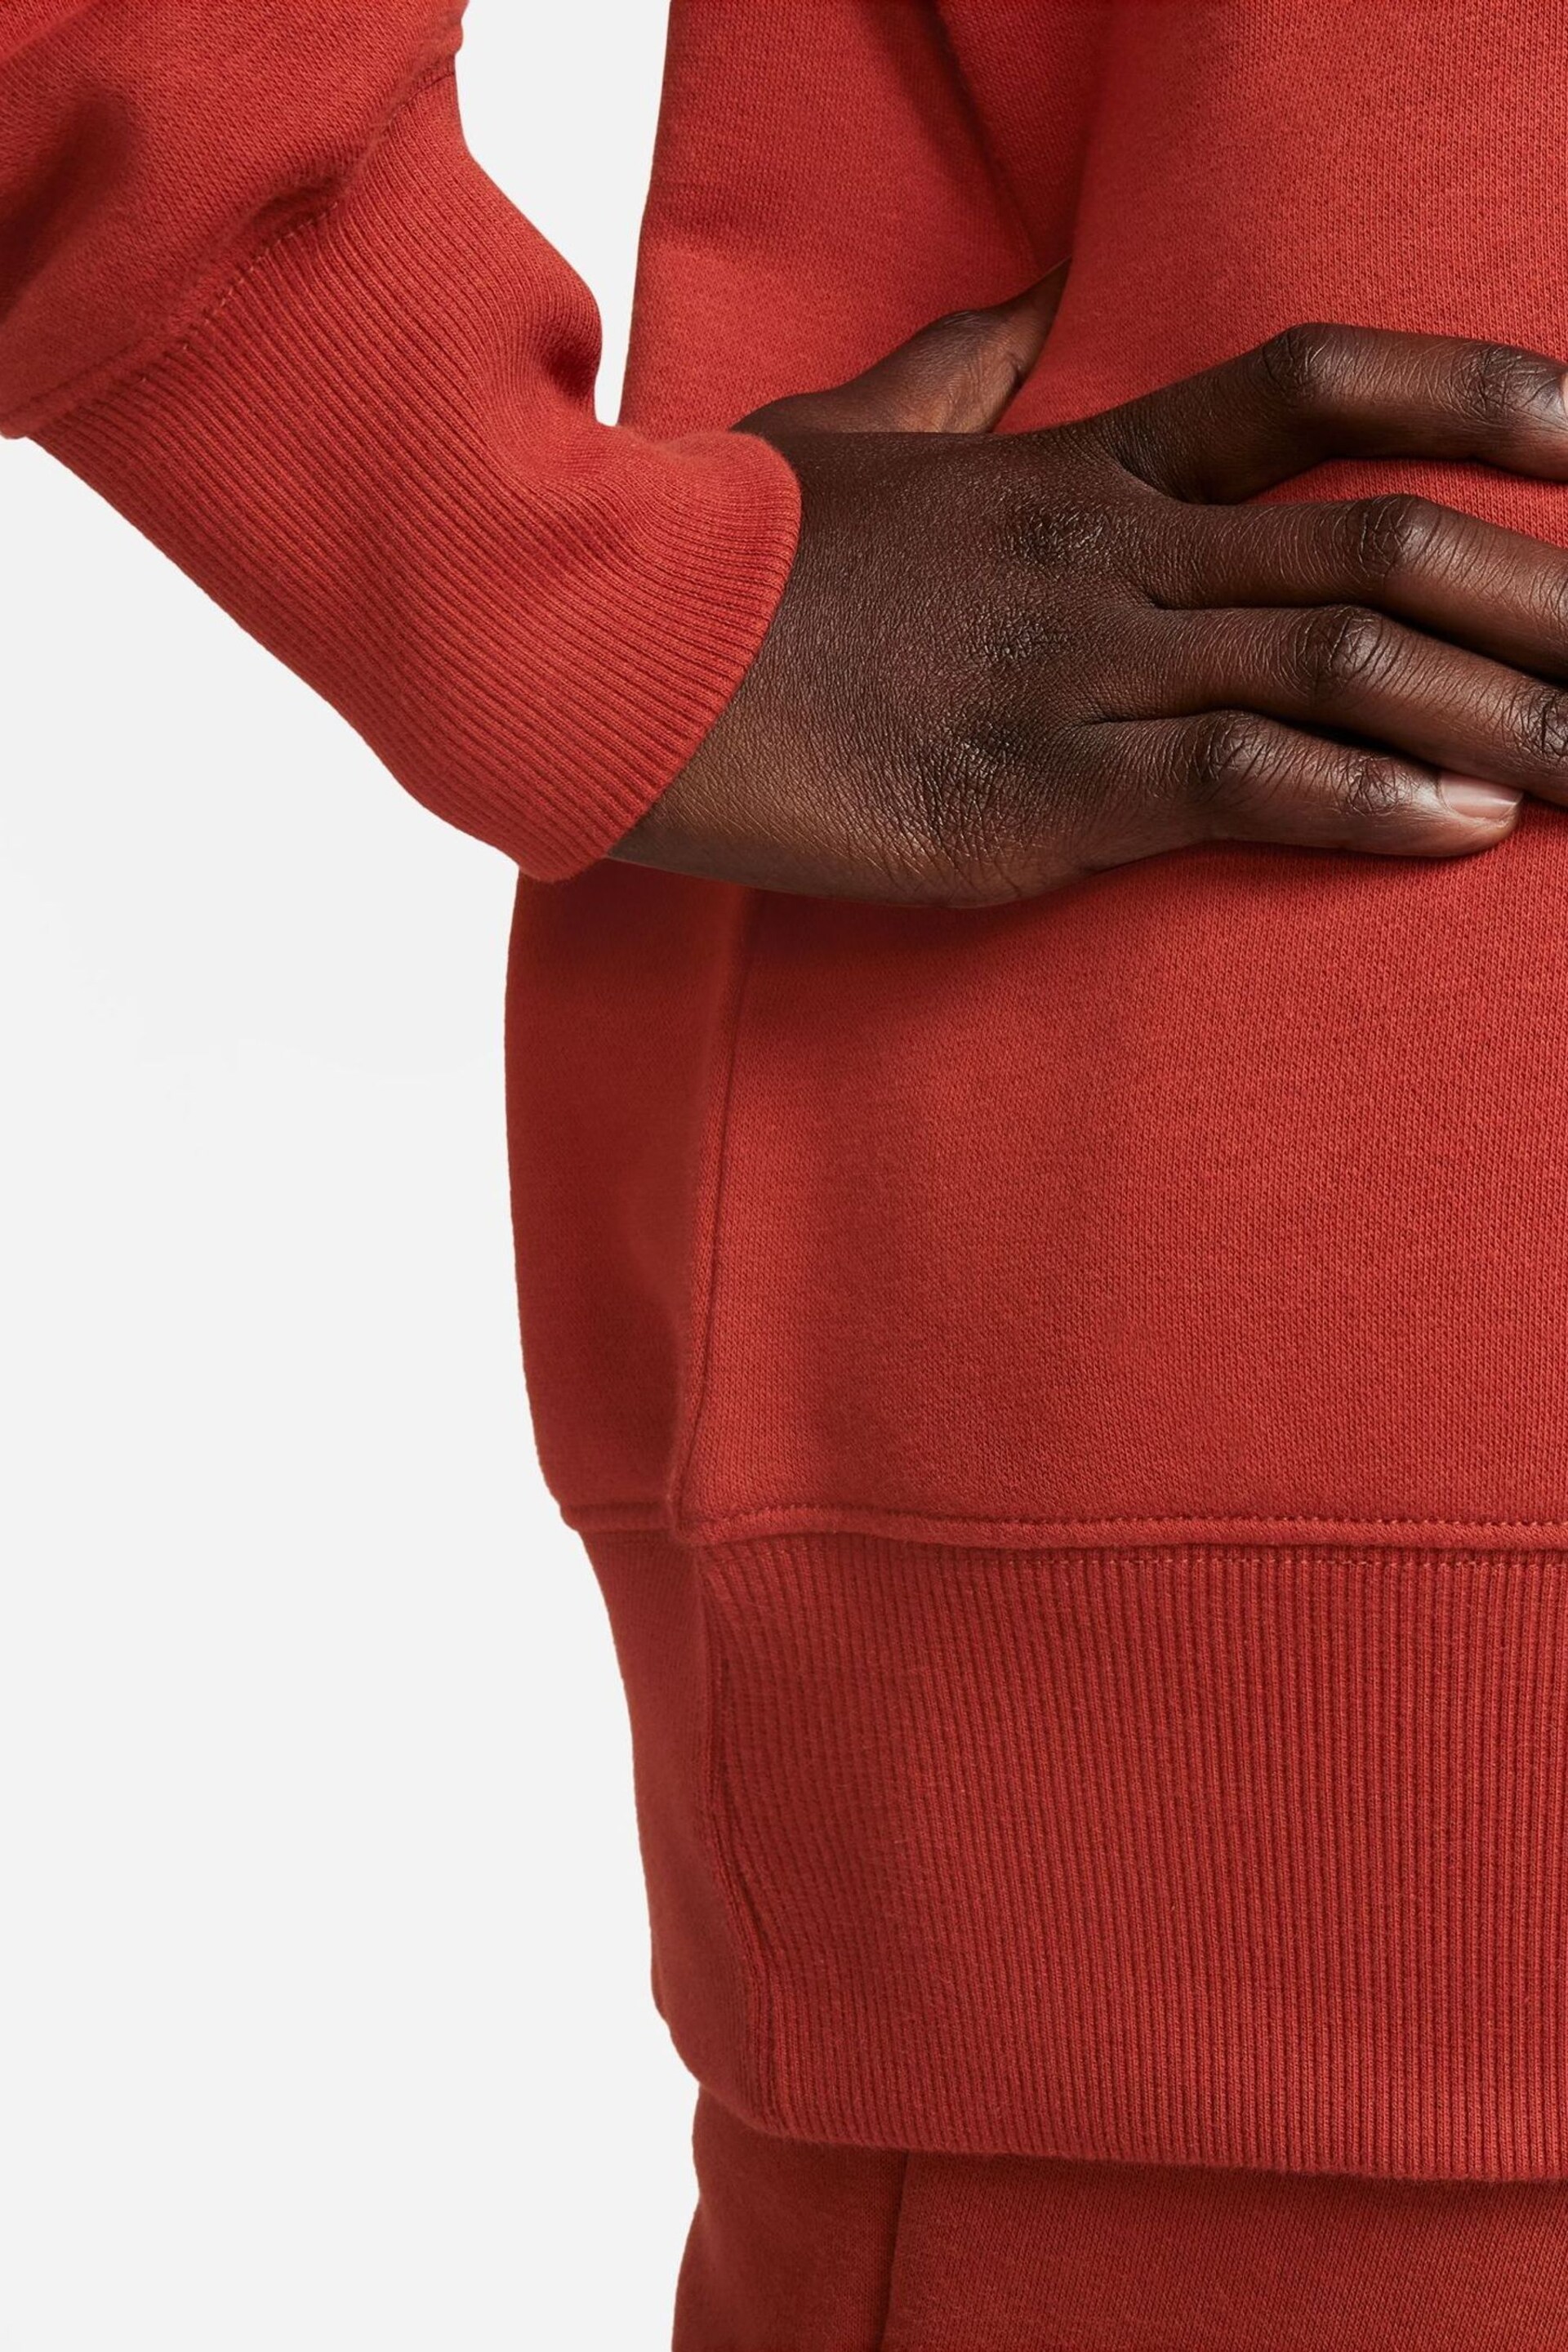 Nike Orange Phoenix Fleece Oersize Sweatshirt - Image 6 of 7